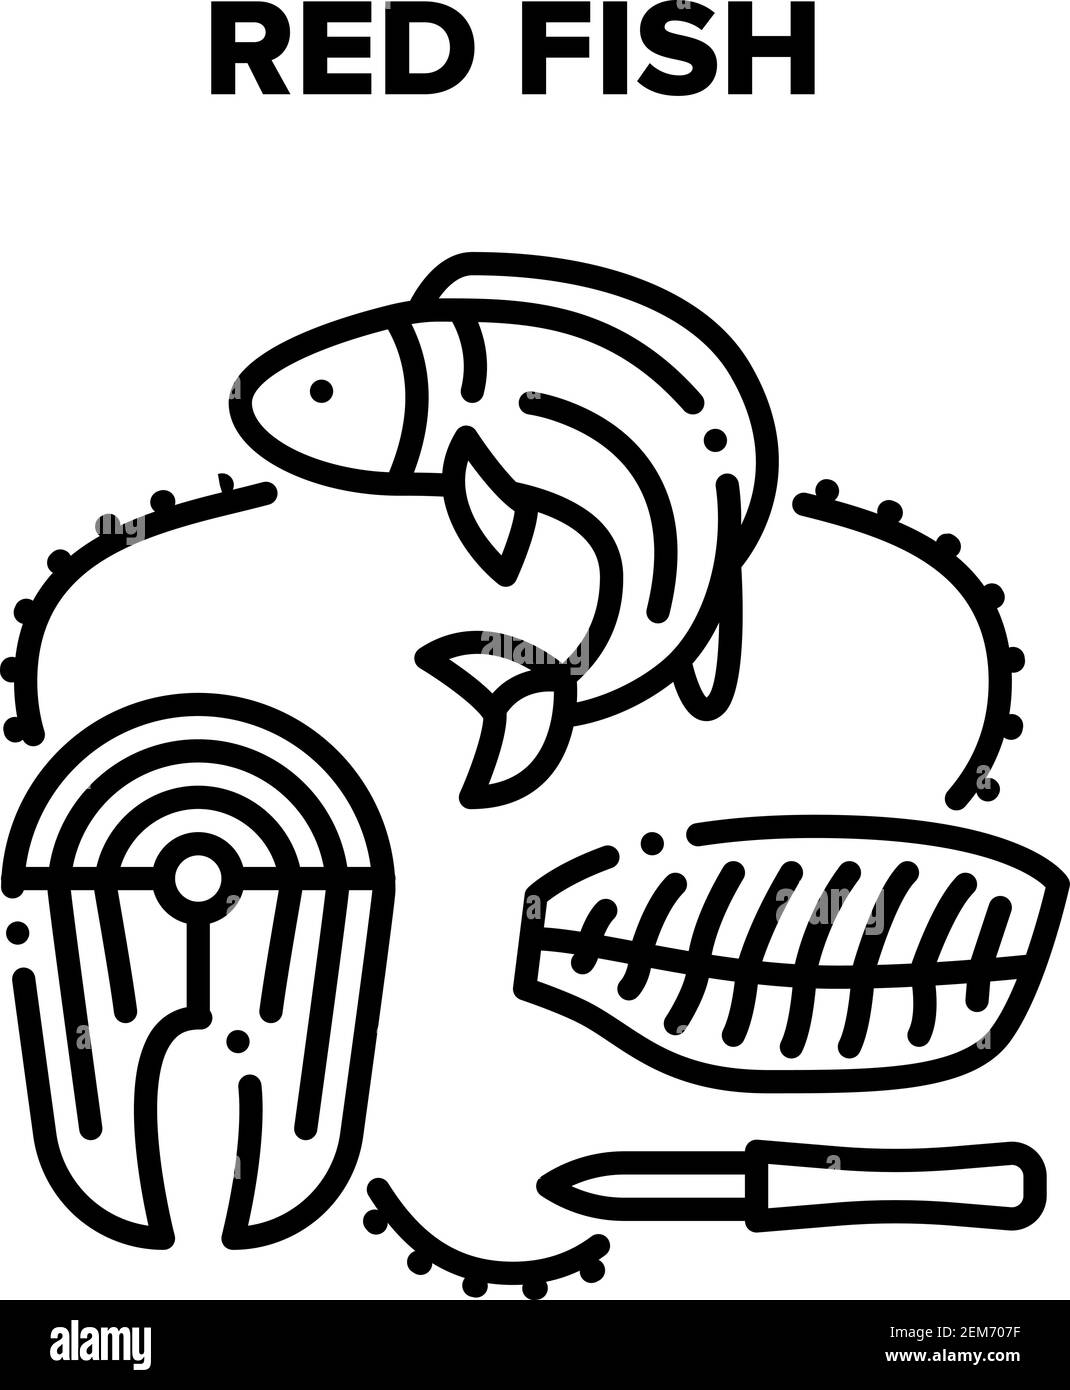 Illustrations de la viande de poisson rouge Vector Black Illustration de Vecteur